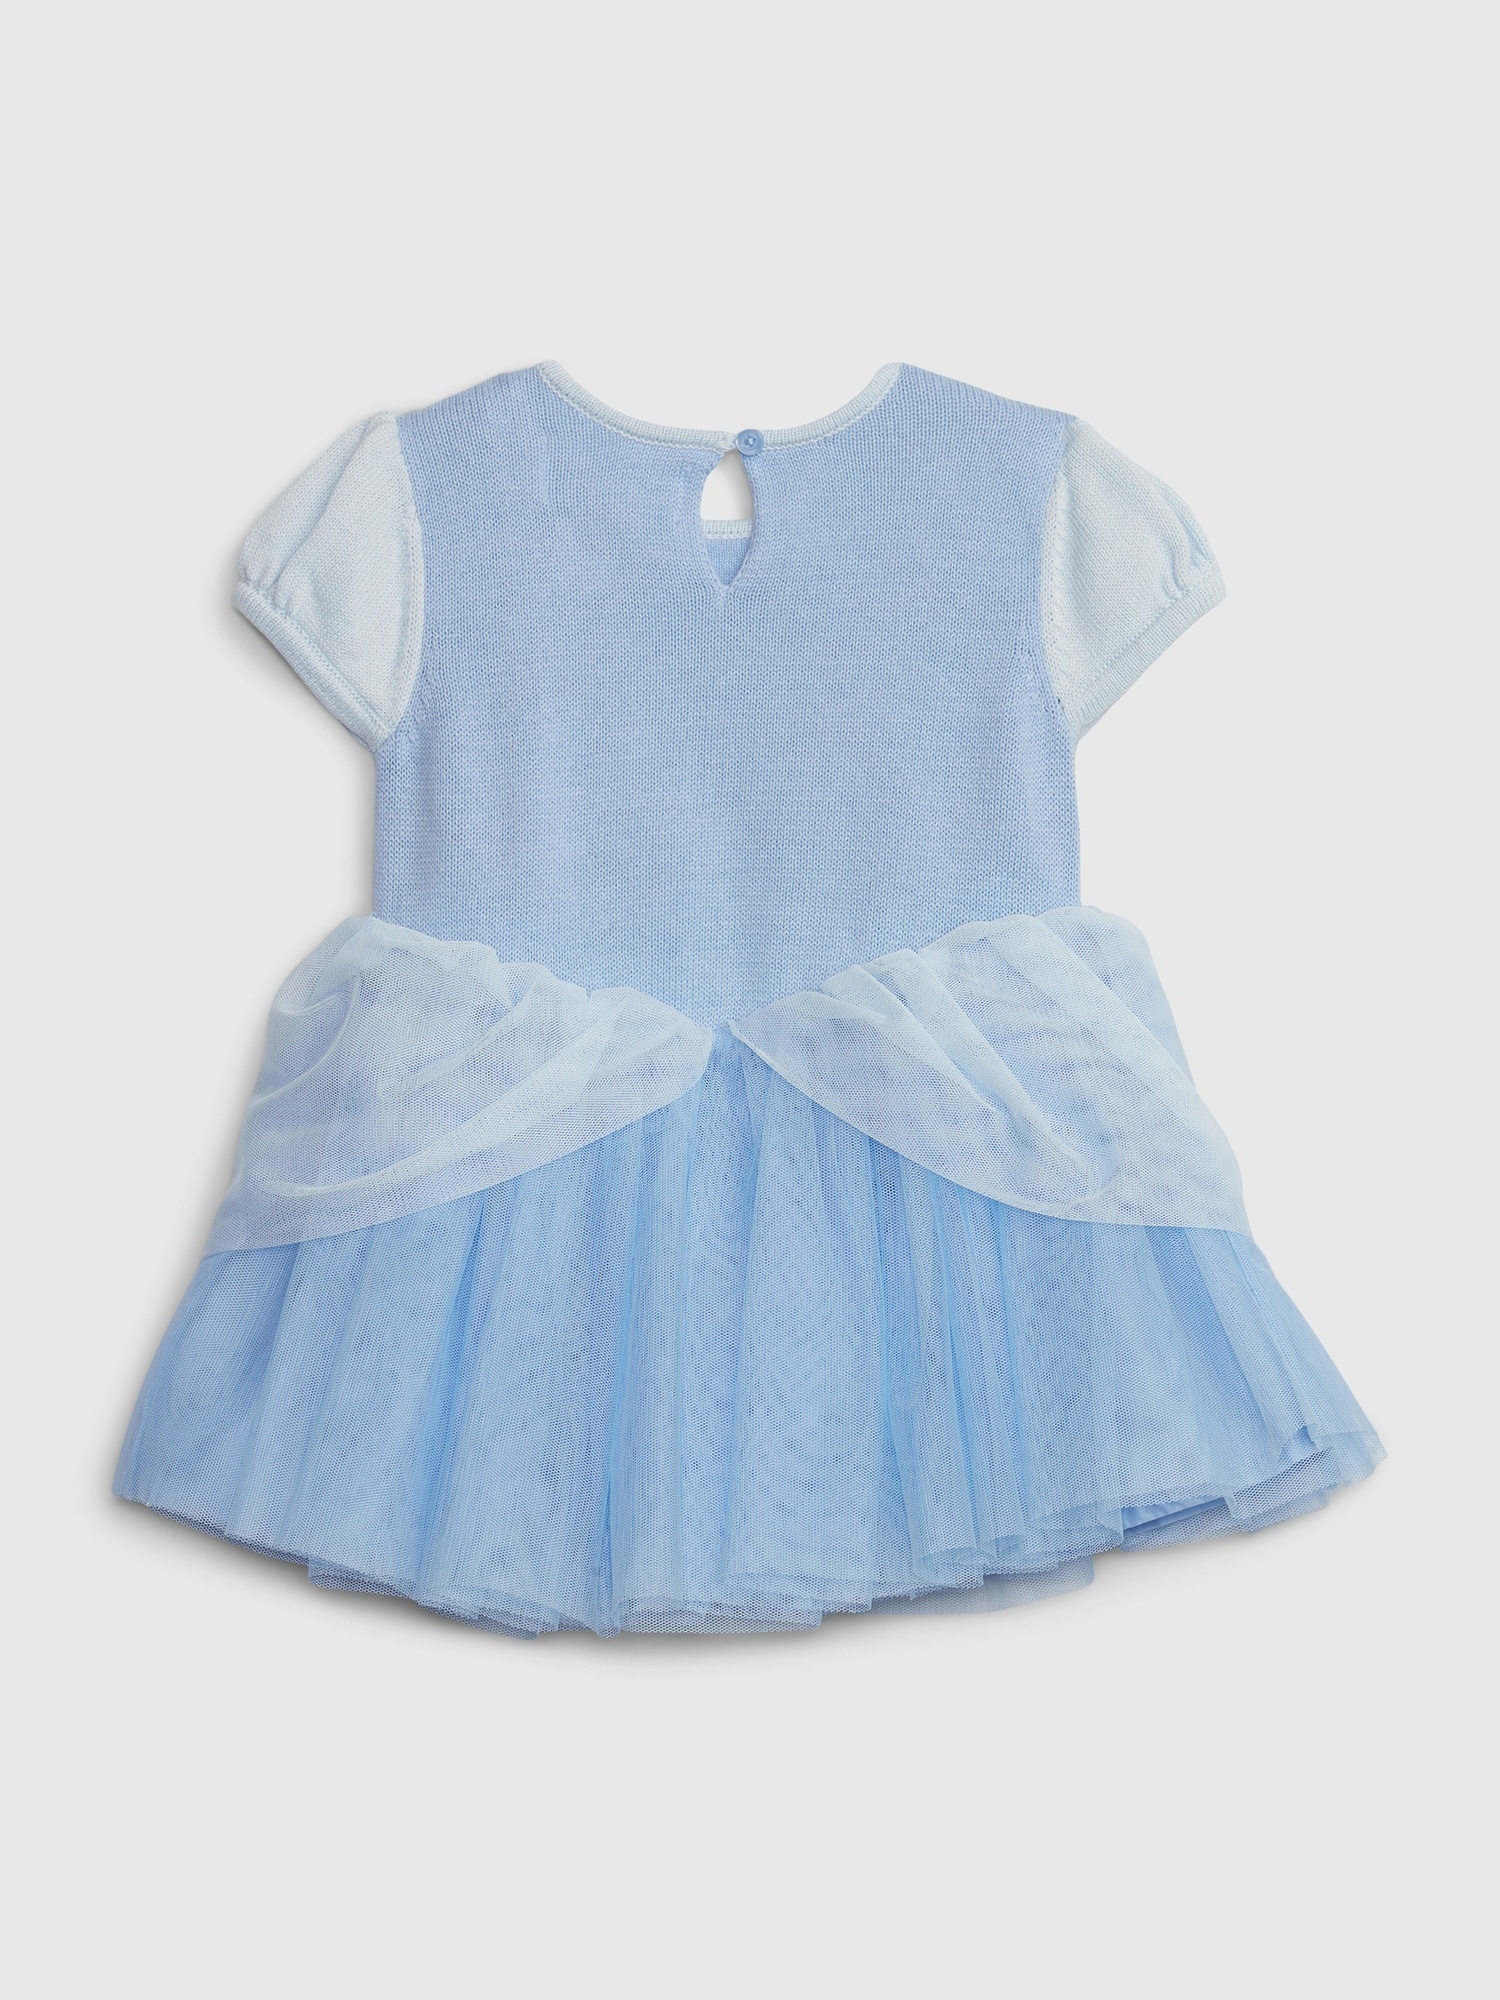 babyGap | Disney Tulle Dress | Gap